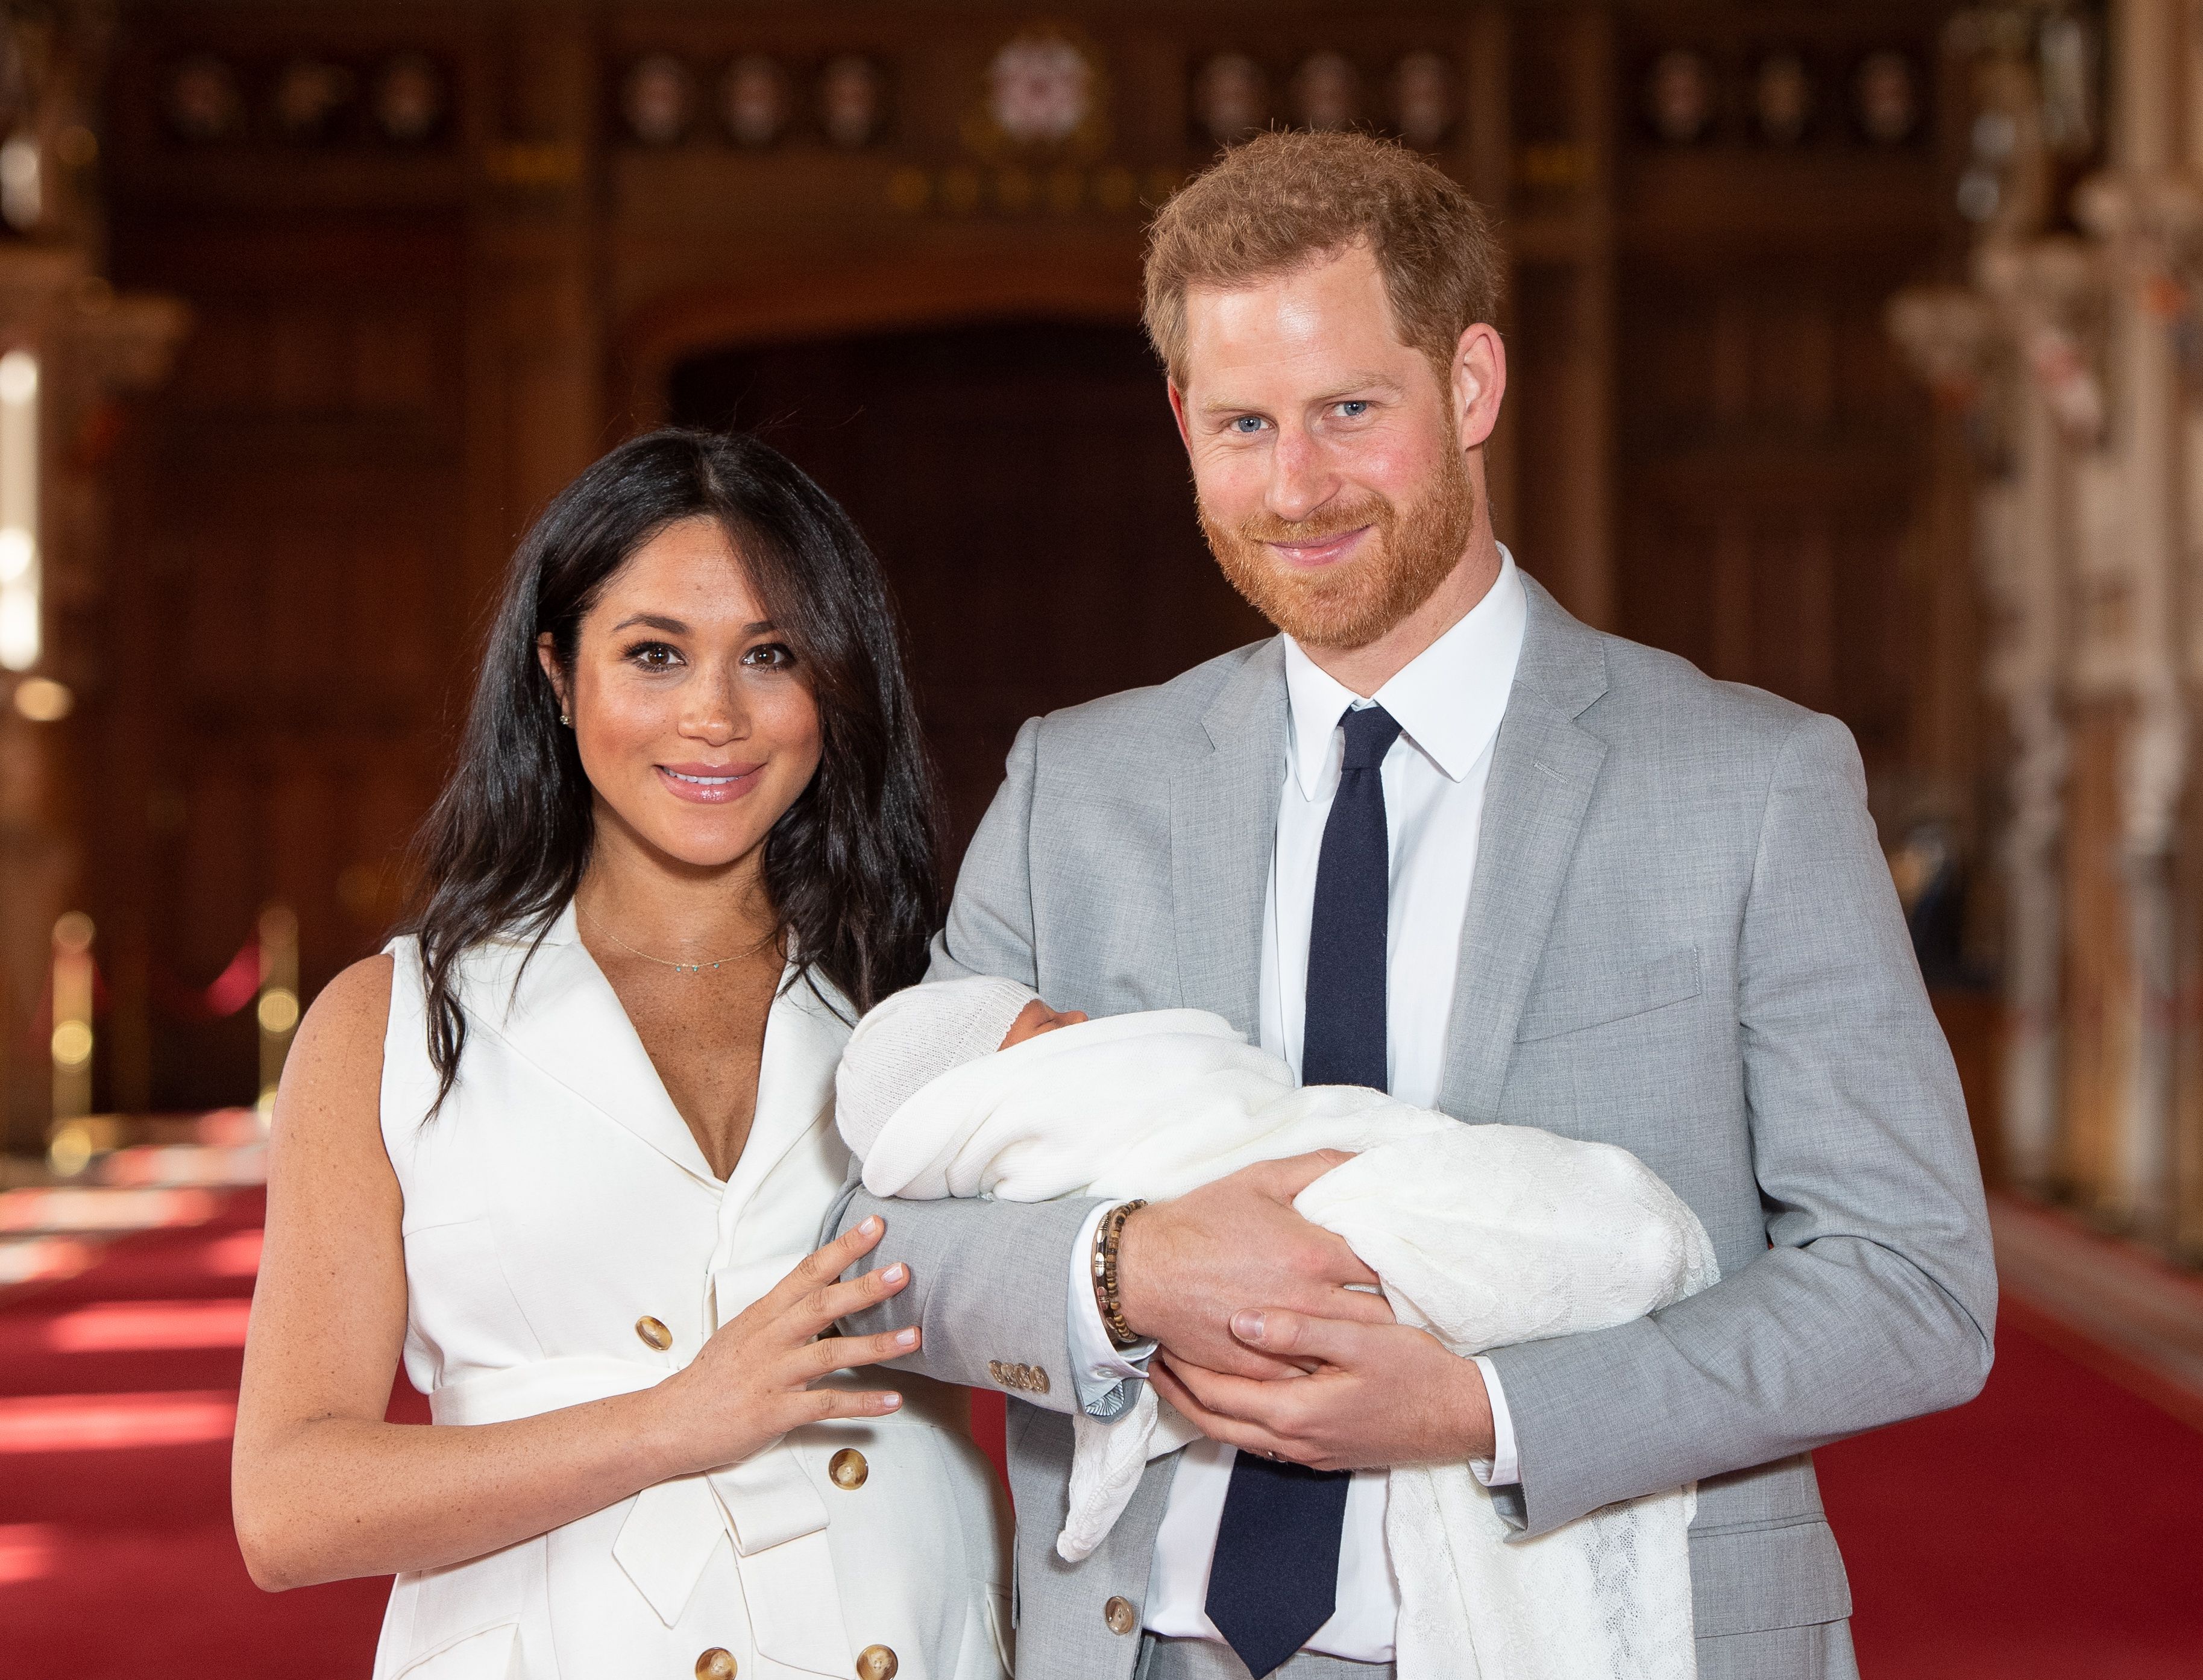 El príncipe Harry y Meghan Markle posan con su hijo recién nacido Archie Harrison Mountbatten-Windsor en el Salón de San Jorge del Castillo de Windsor el 8 de mayo de 2019 en Windsor, Inglaterra. | Foto: Getty Images